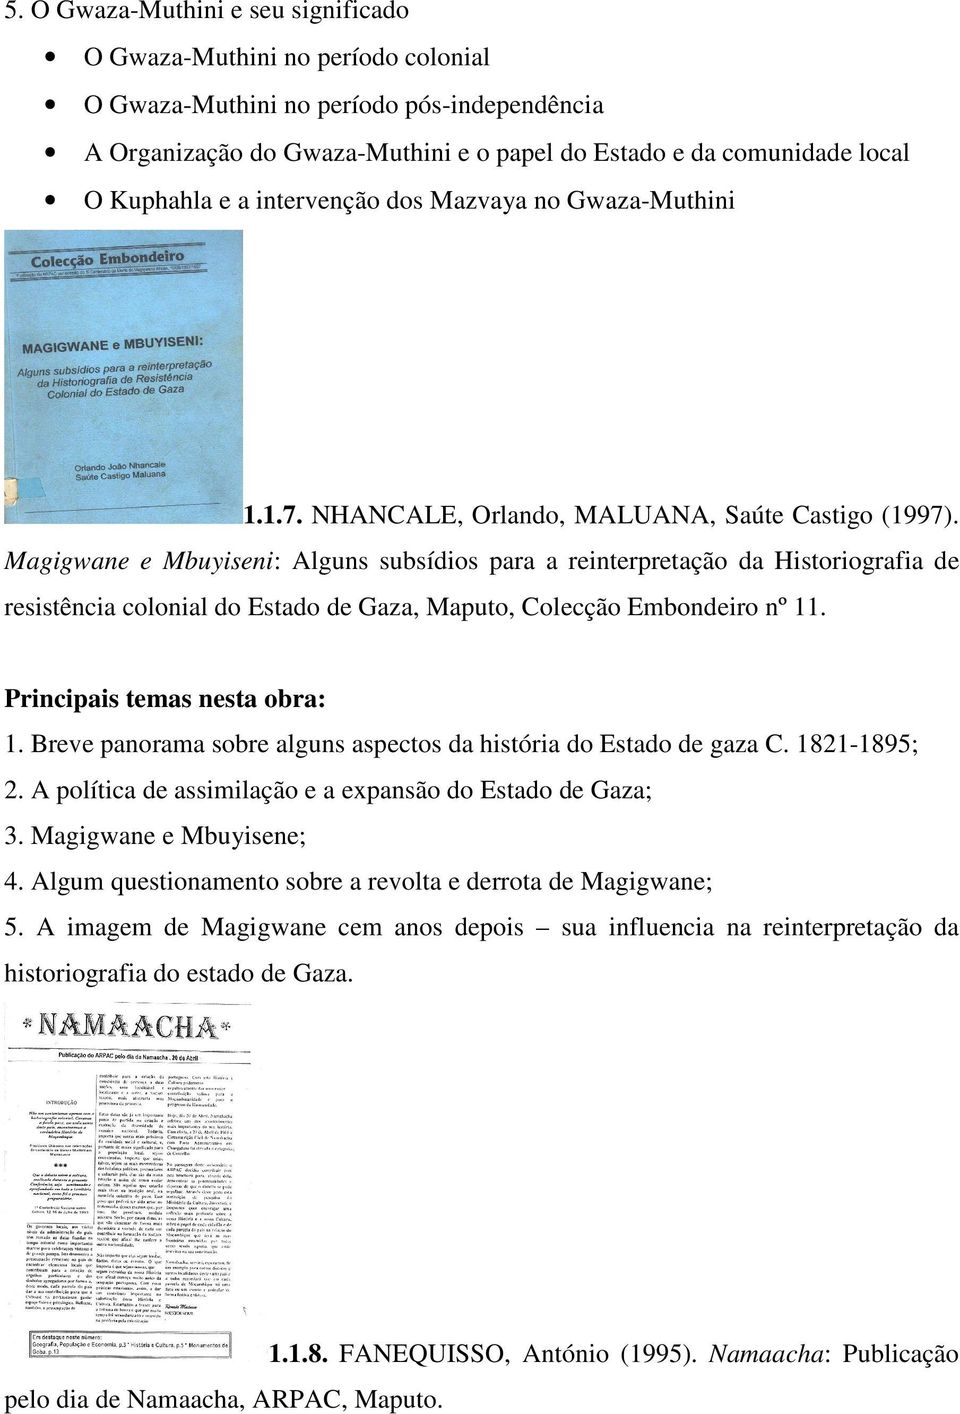 Magigwane e Mbuyiseni: Alguns subsídios para a reinterpretação da Historiografia de resistência colonial do Estado de Gaza, Maputo, Colecção Embondeiro nº 11